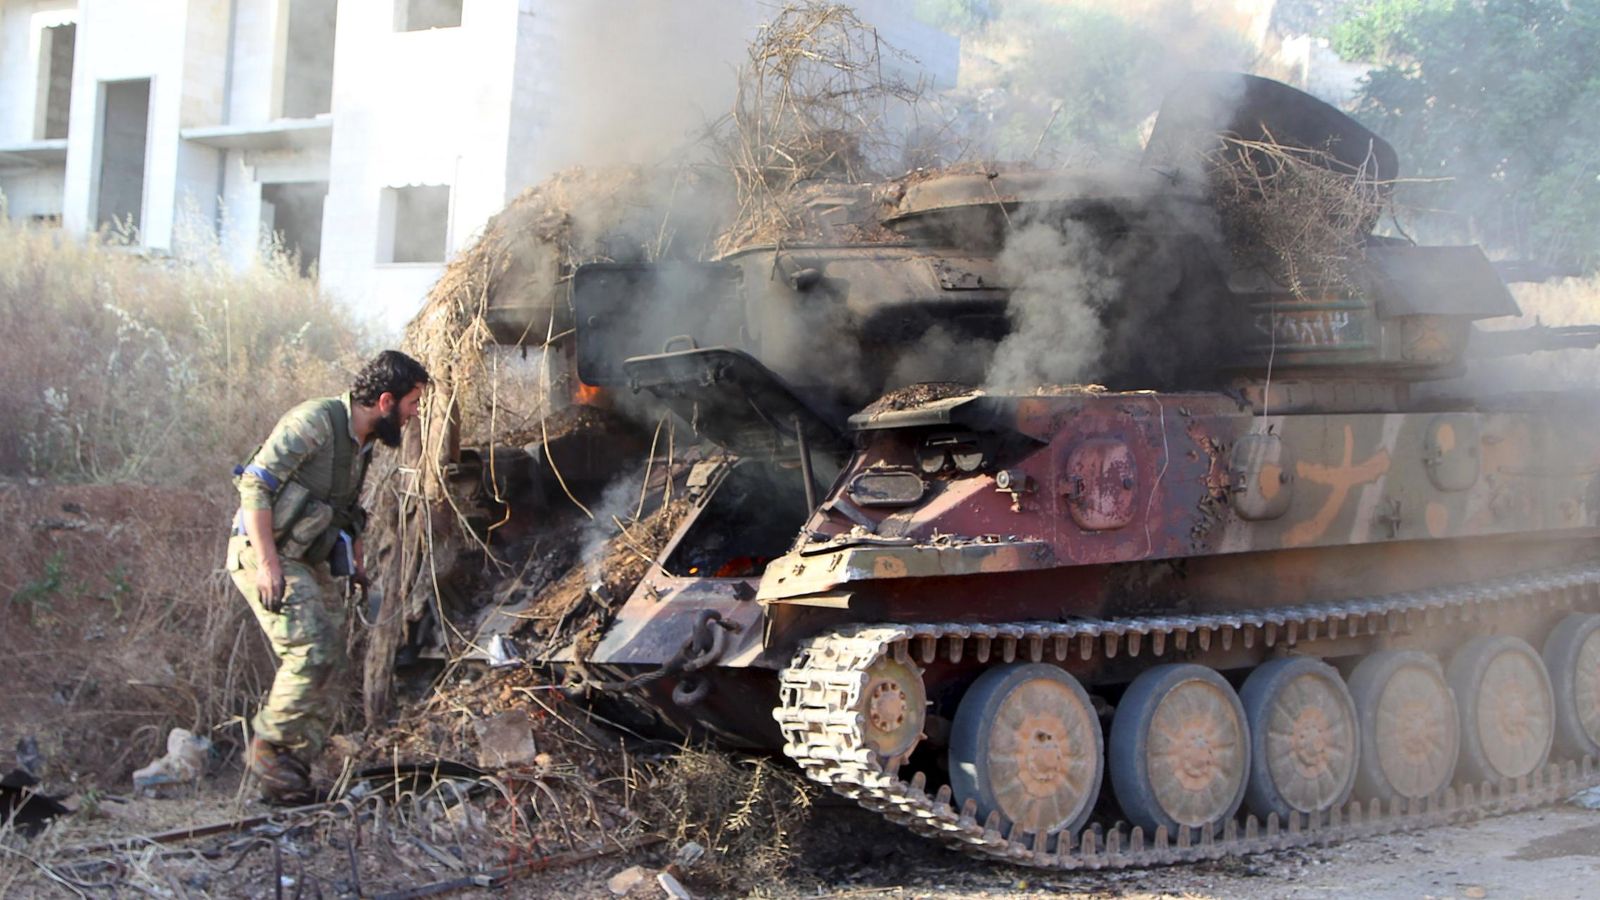 Foto: Un miembro del Frente Al Nusra inspecciona un vehículo antiaéreo en llamas tras la batalla de Ariha, en la provincia de Idlib (Reuters)